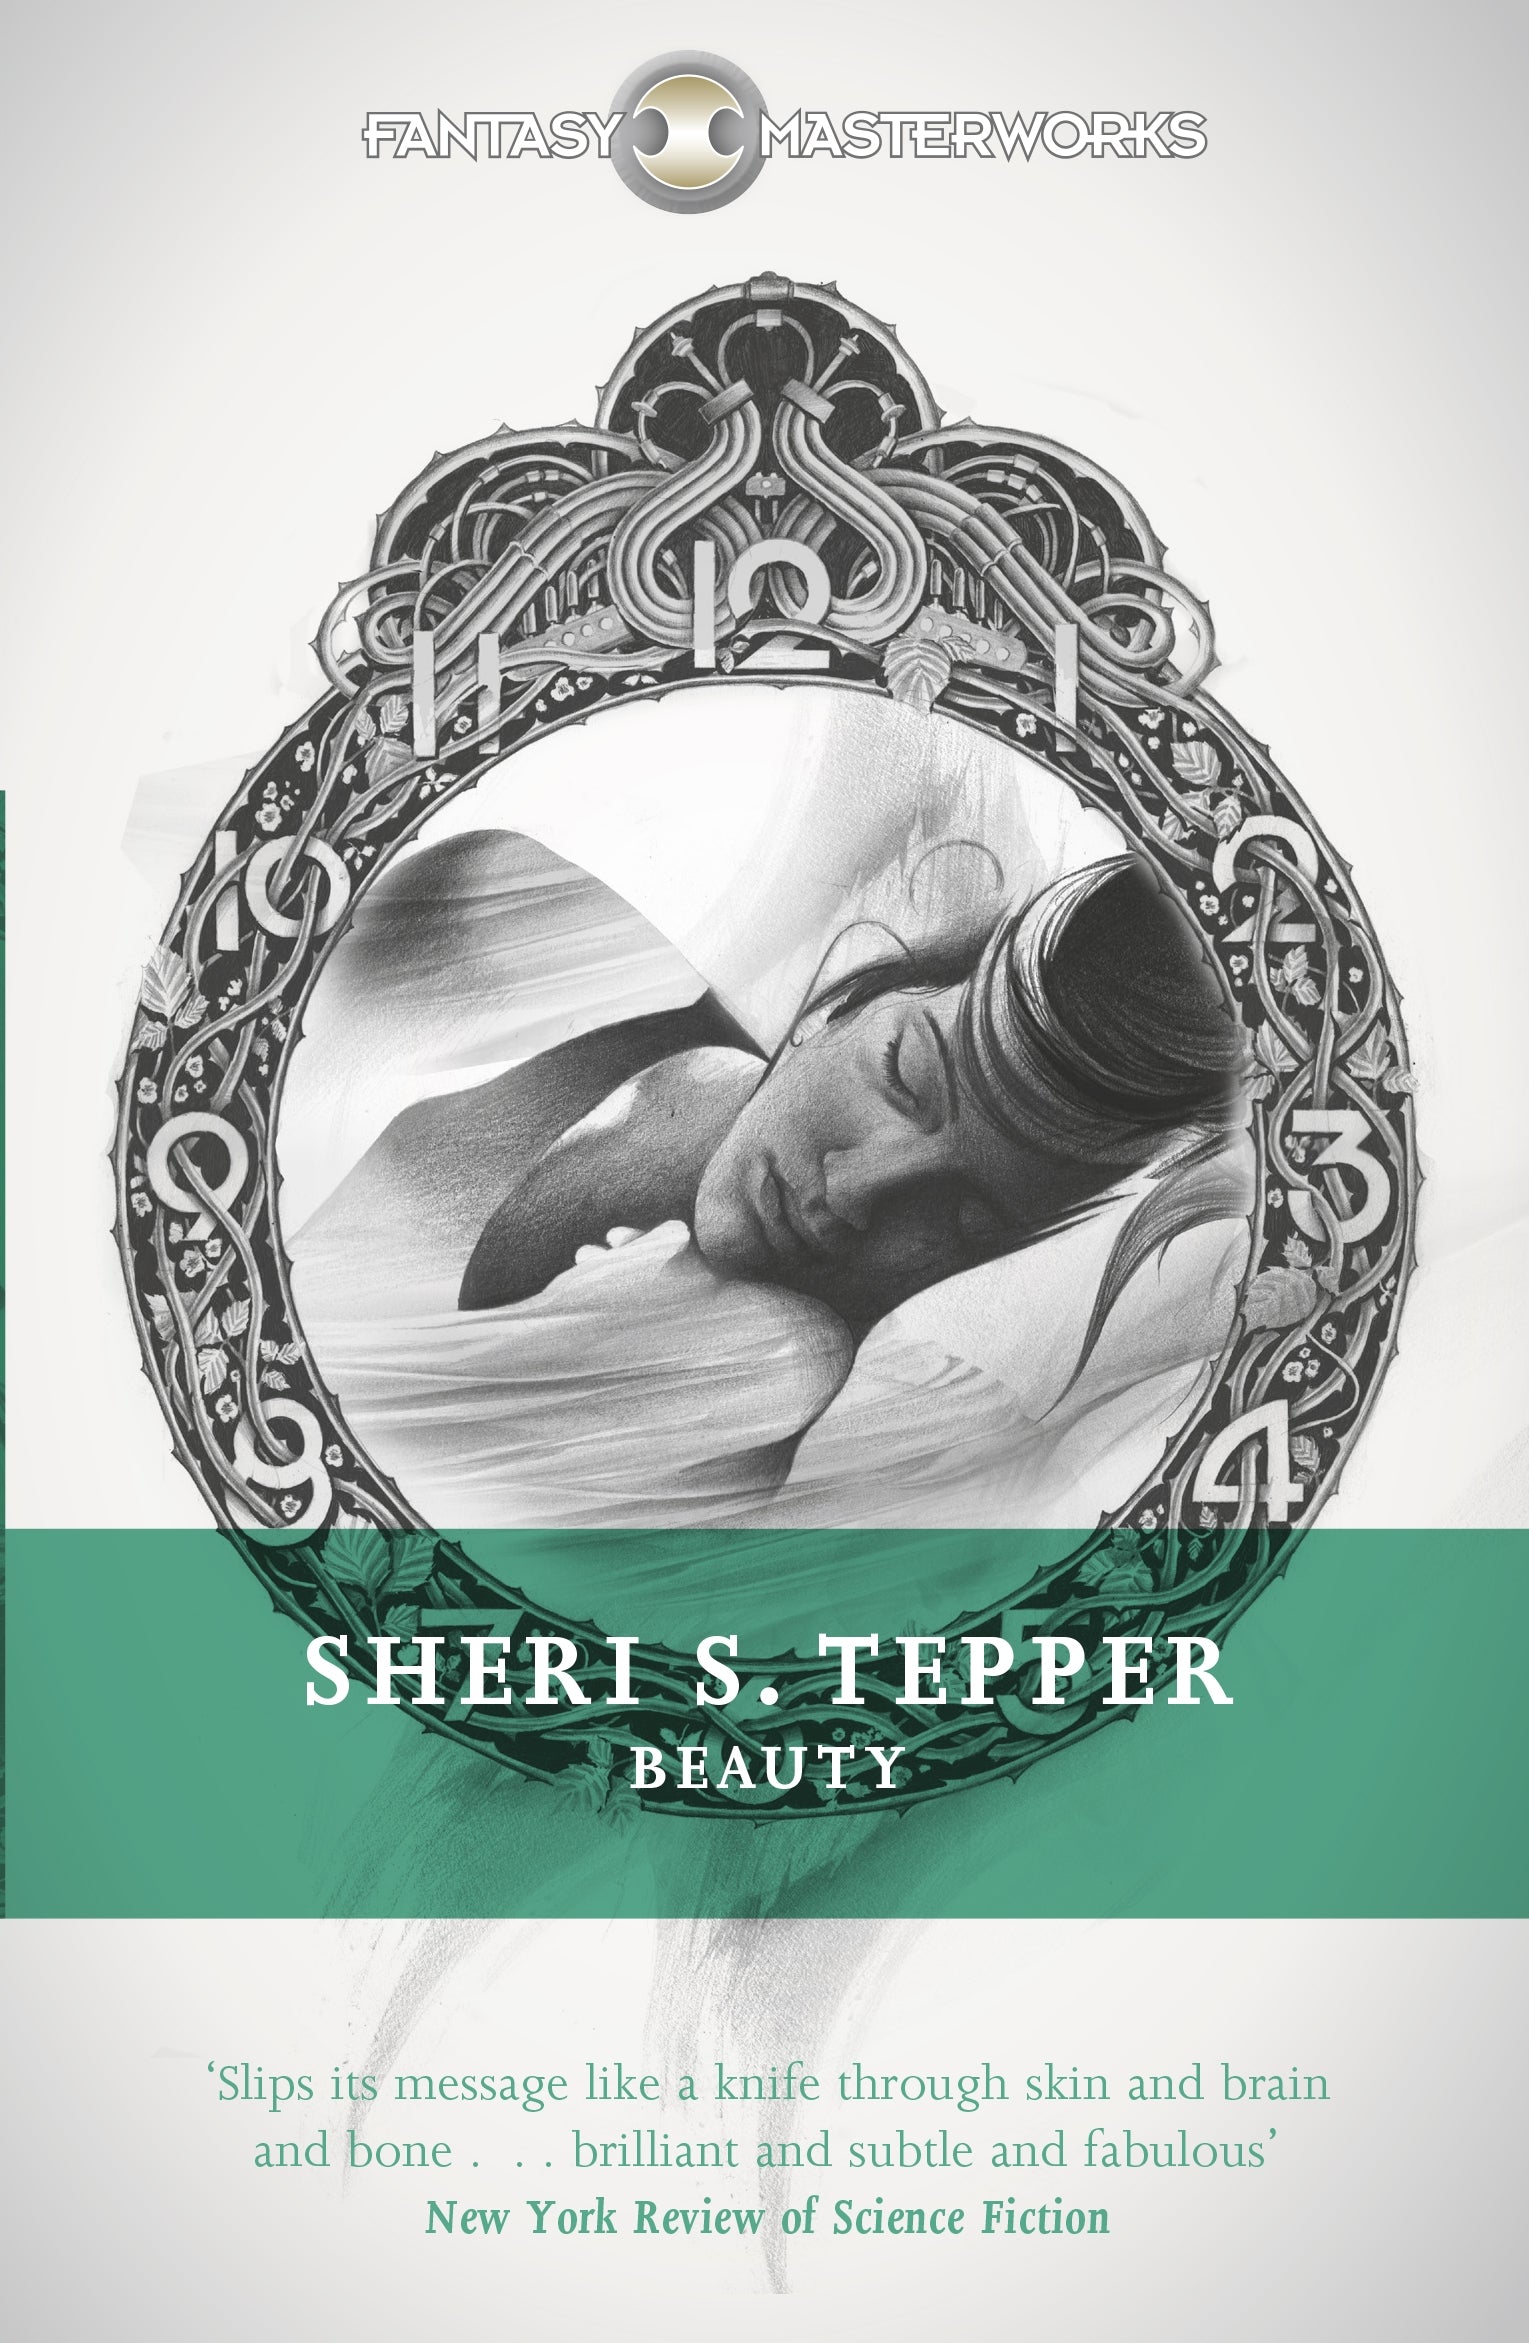 Beauty by Sheri S. Tepper